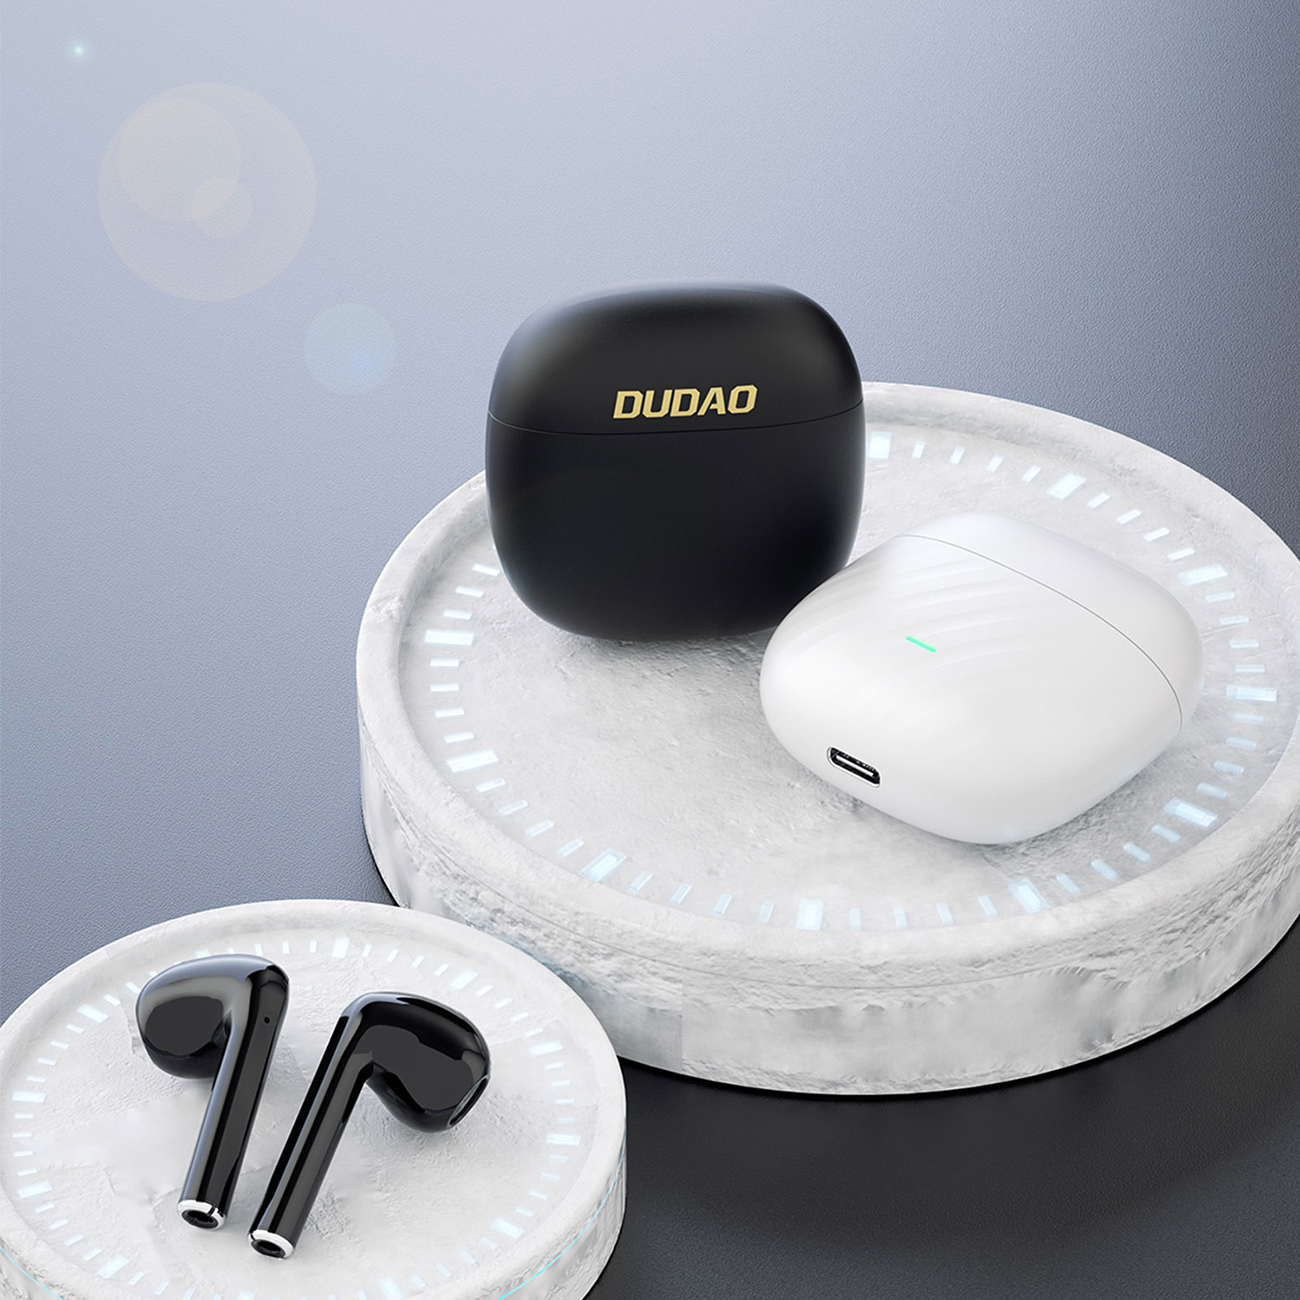 Zwei Paar kabellose Dudao U14+ TWS-Kopfhörer liegen auf einem Steinständer